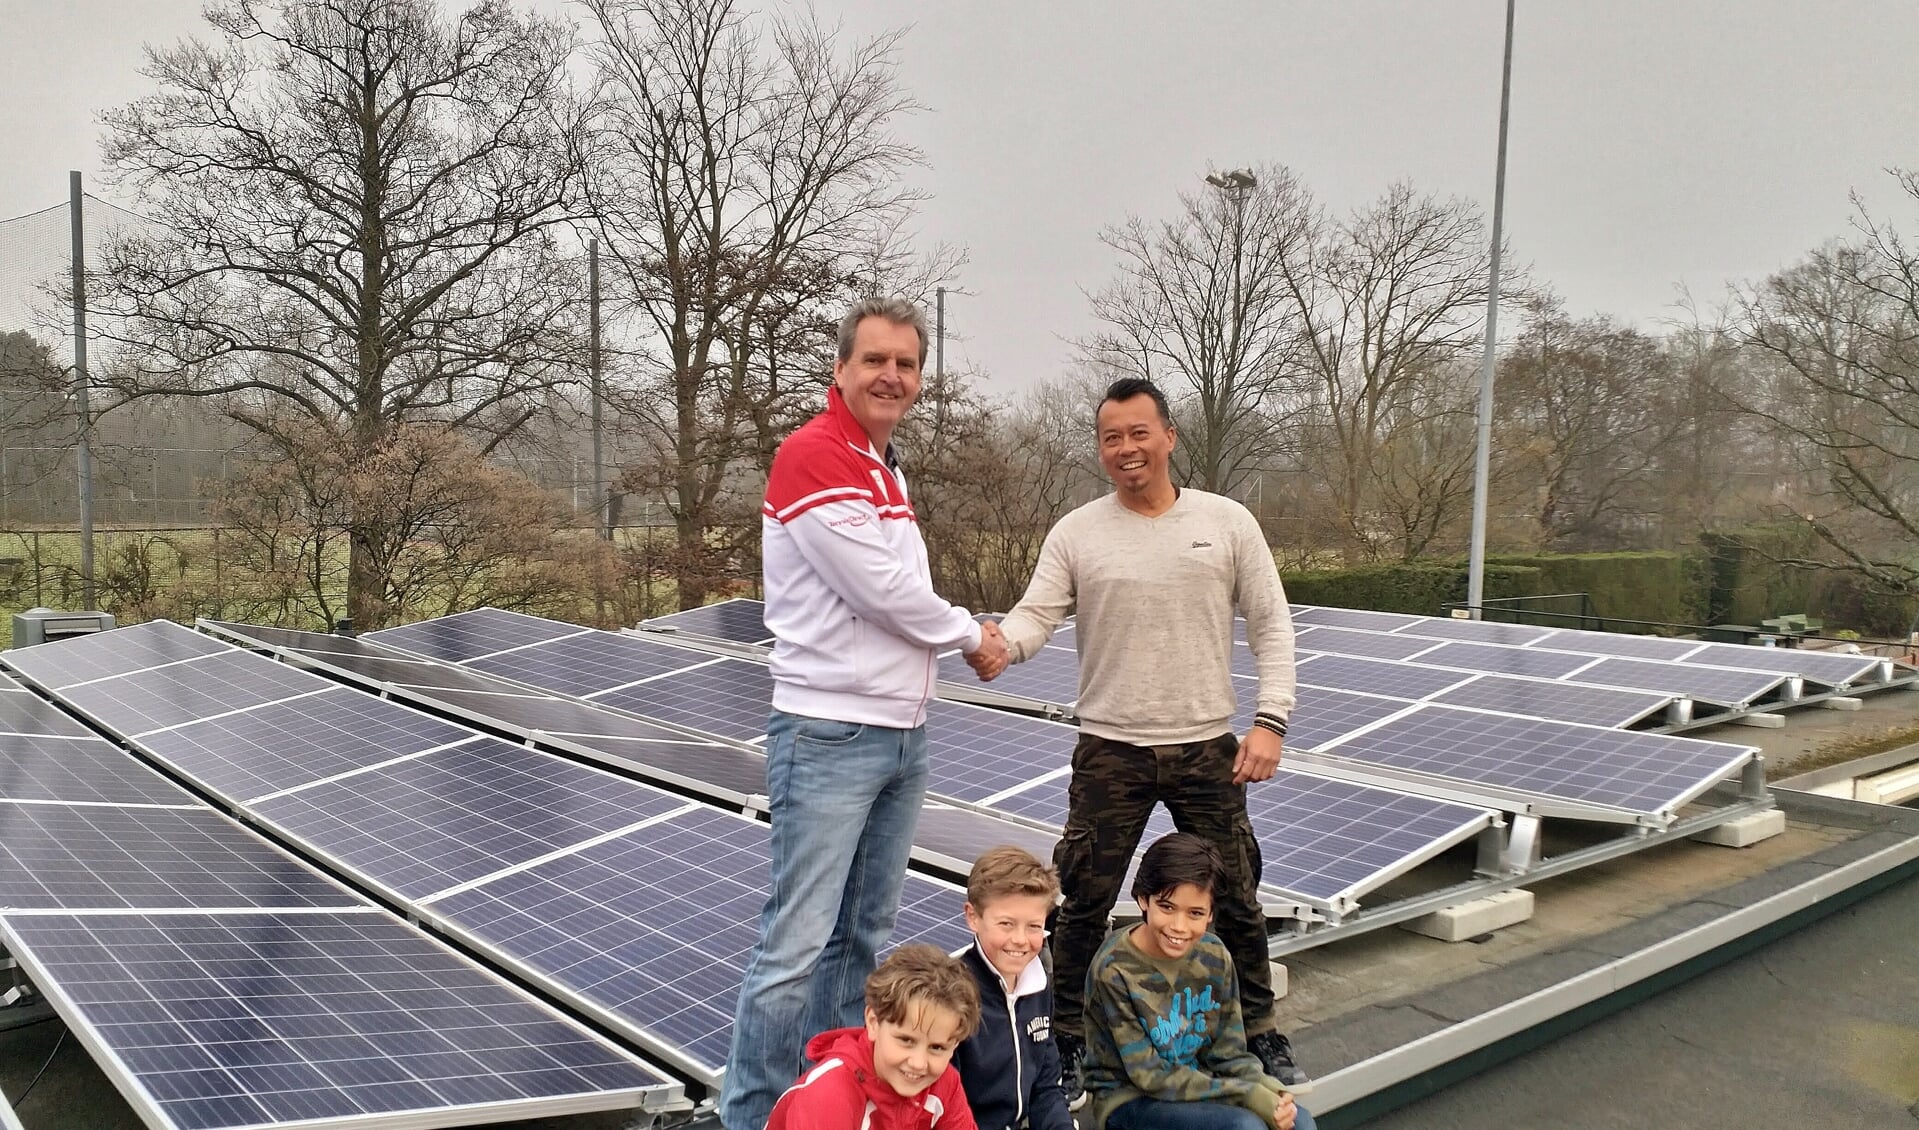 Erwin Gosenson van Solar Group draagt de zonnepaneleninstallatie over aan de voorzitter van OLTC Dick de Groot in het bijzijn van drie jeugdleden.